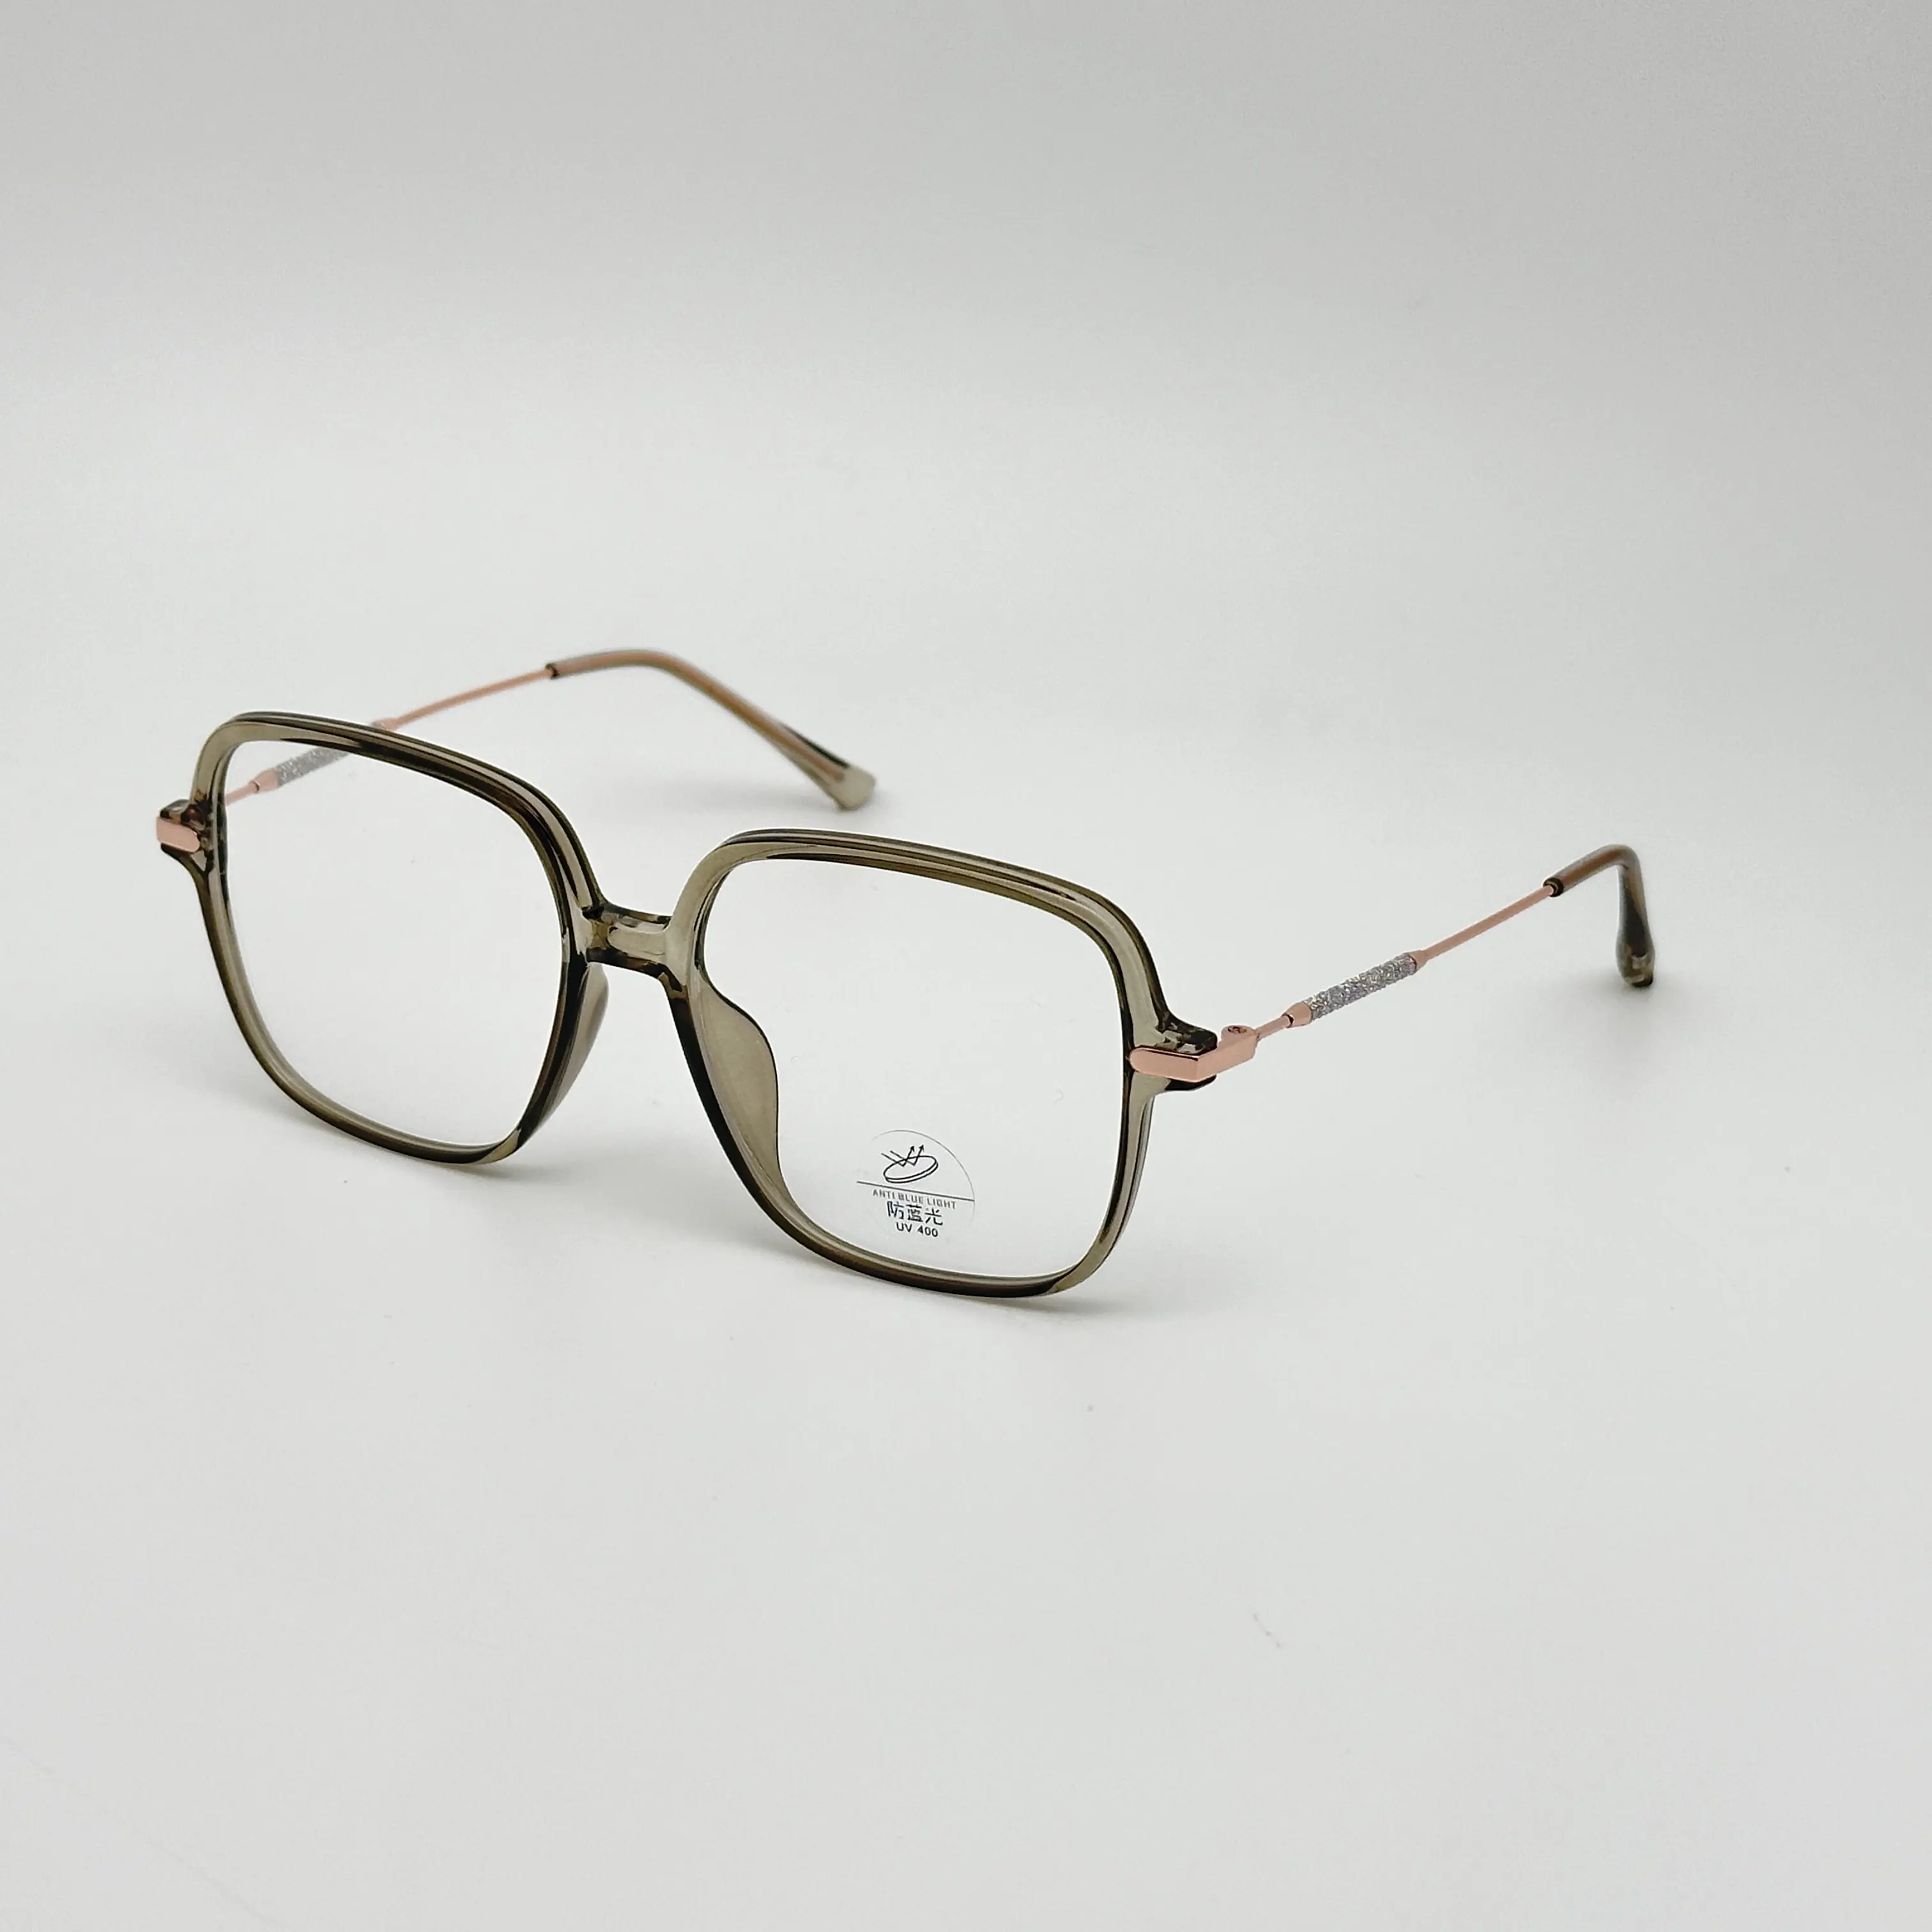 맞춤형 도매 TR90 대형 사각형 남성 디자이너 장식 프레임 광학 안경 안경 아이 프레임 광학 안경